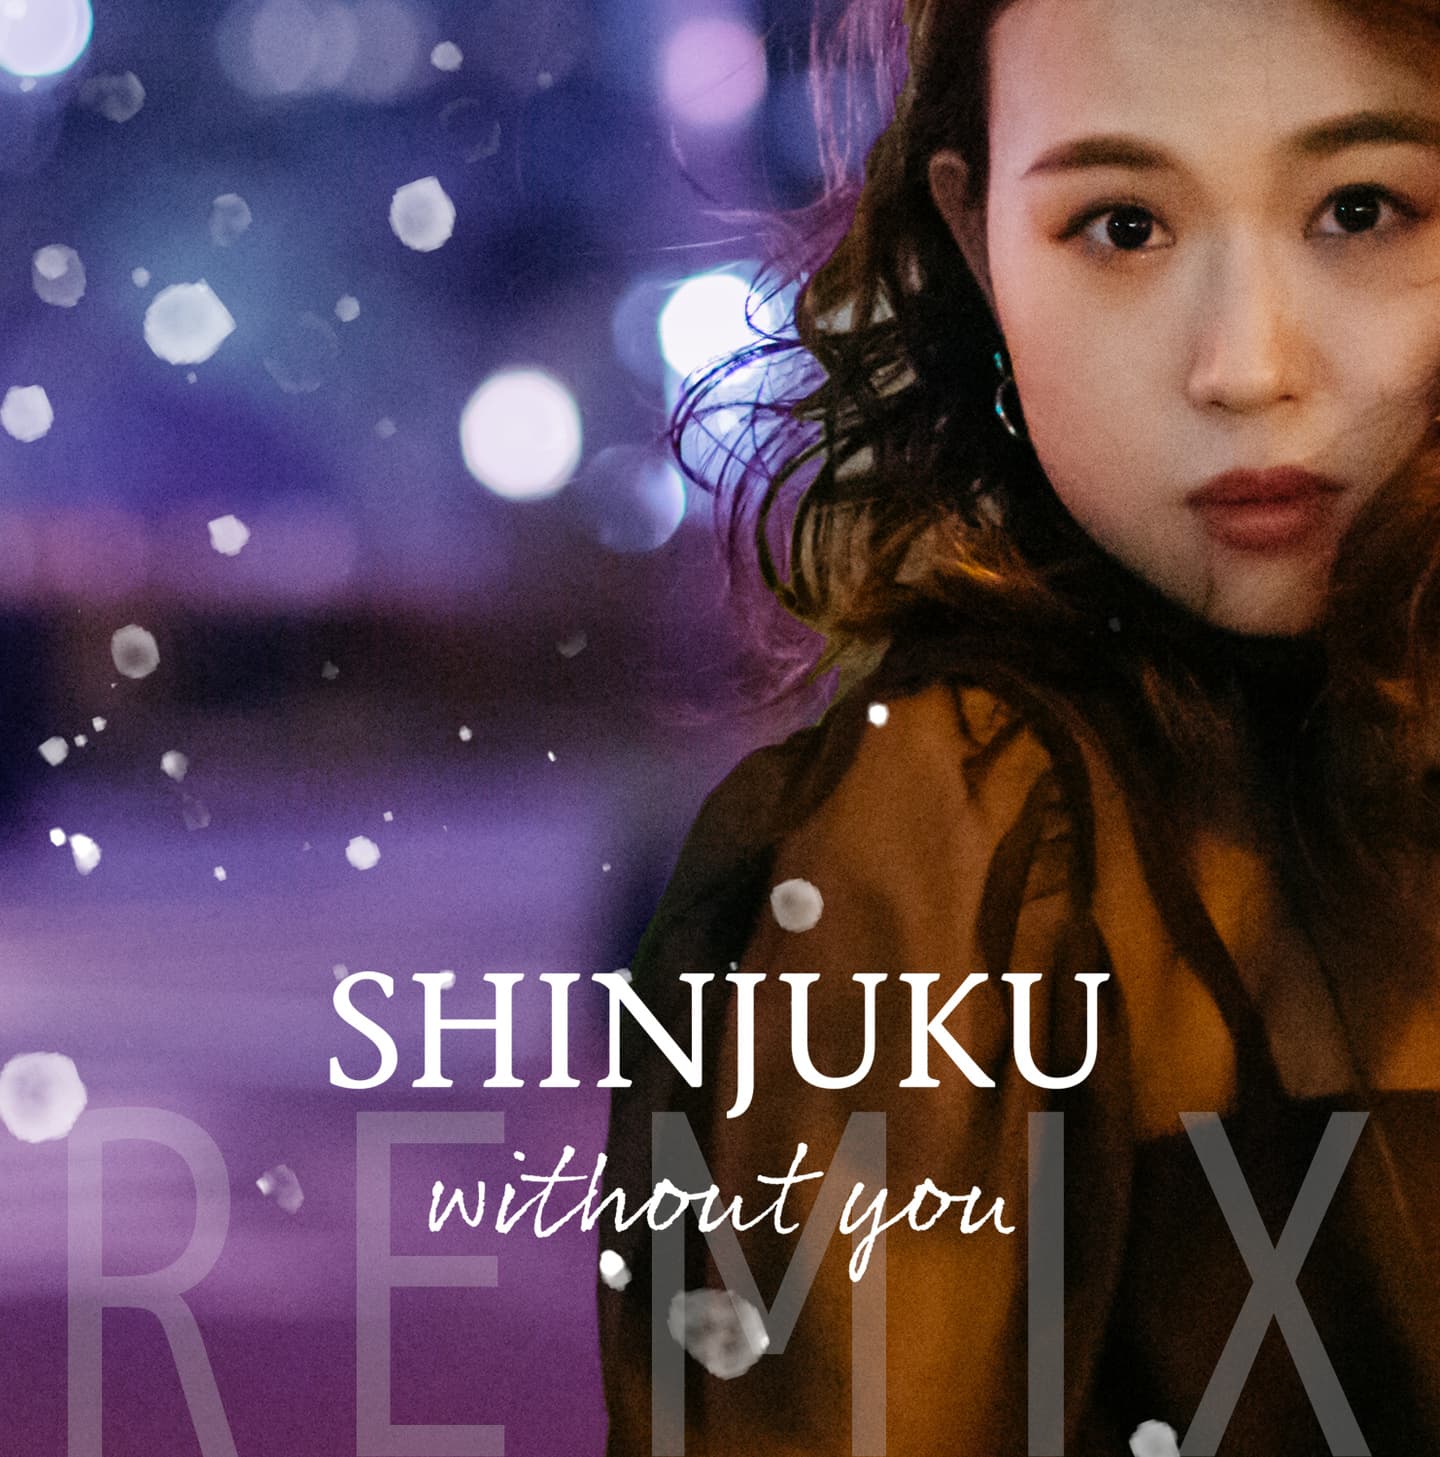 Miricah& 「SHINJUKU without you」 REMIX